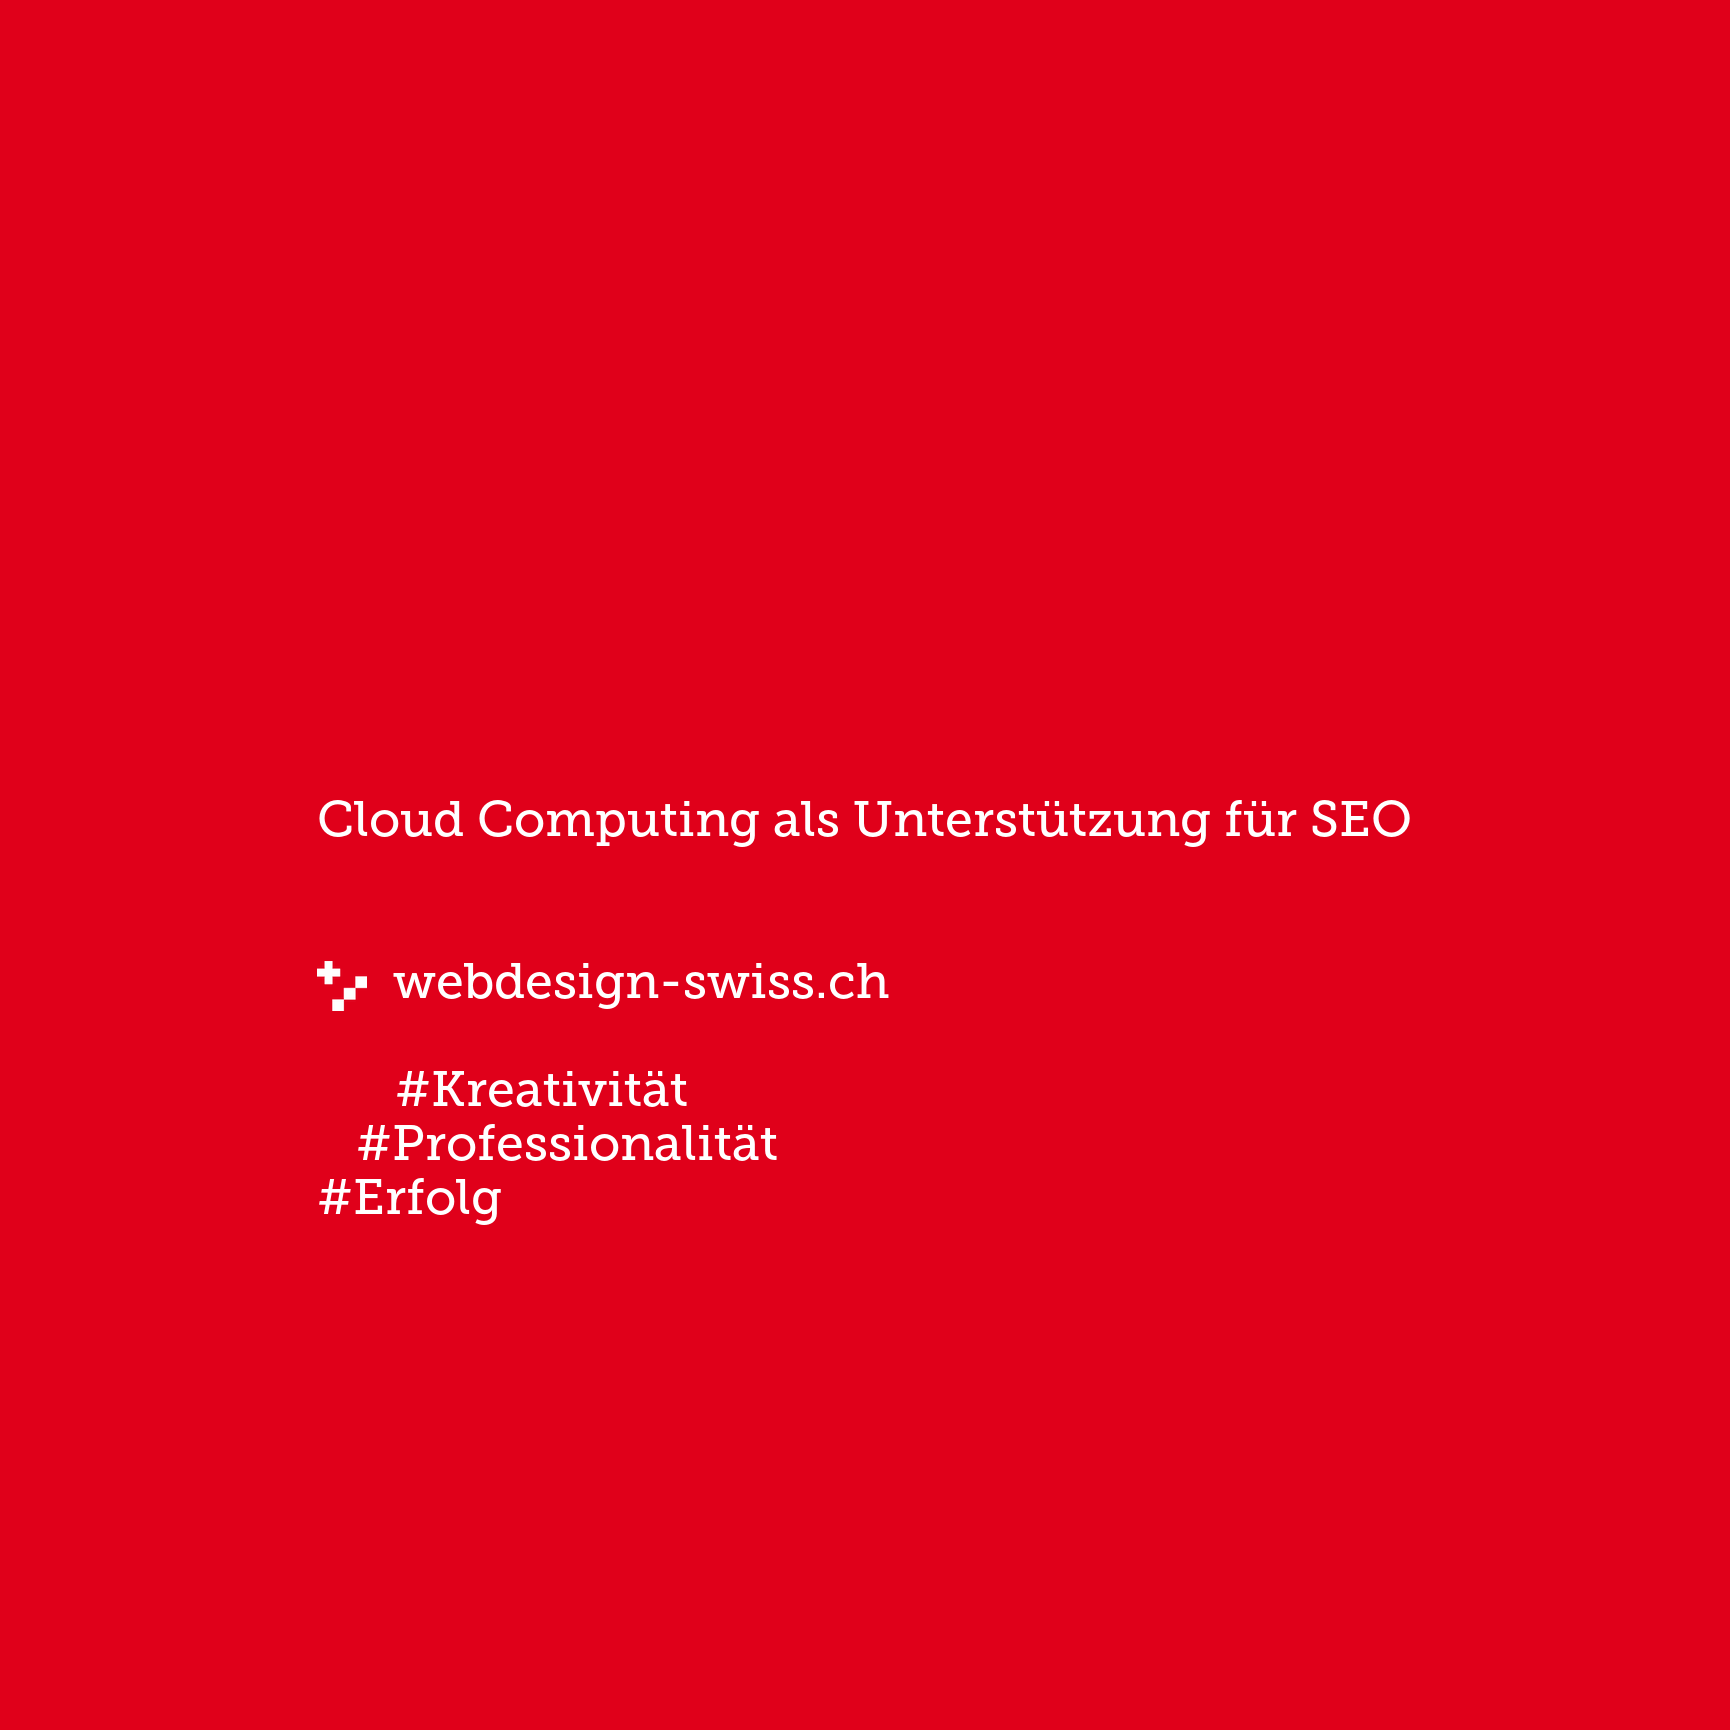 Cloud Computing als Unterstützung für SEO